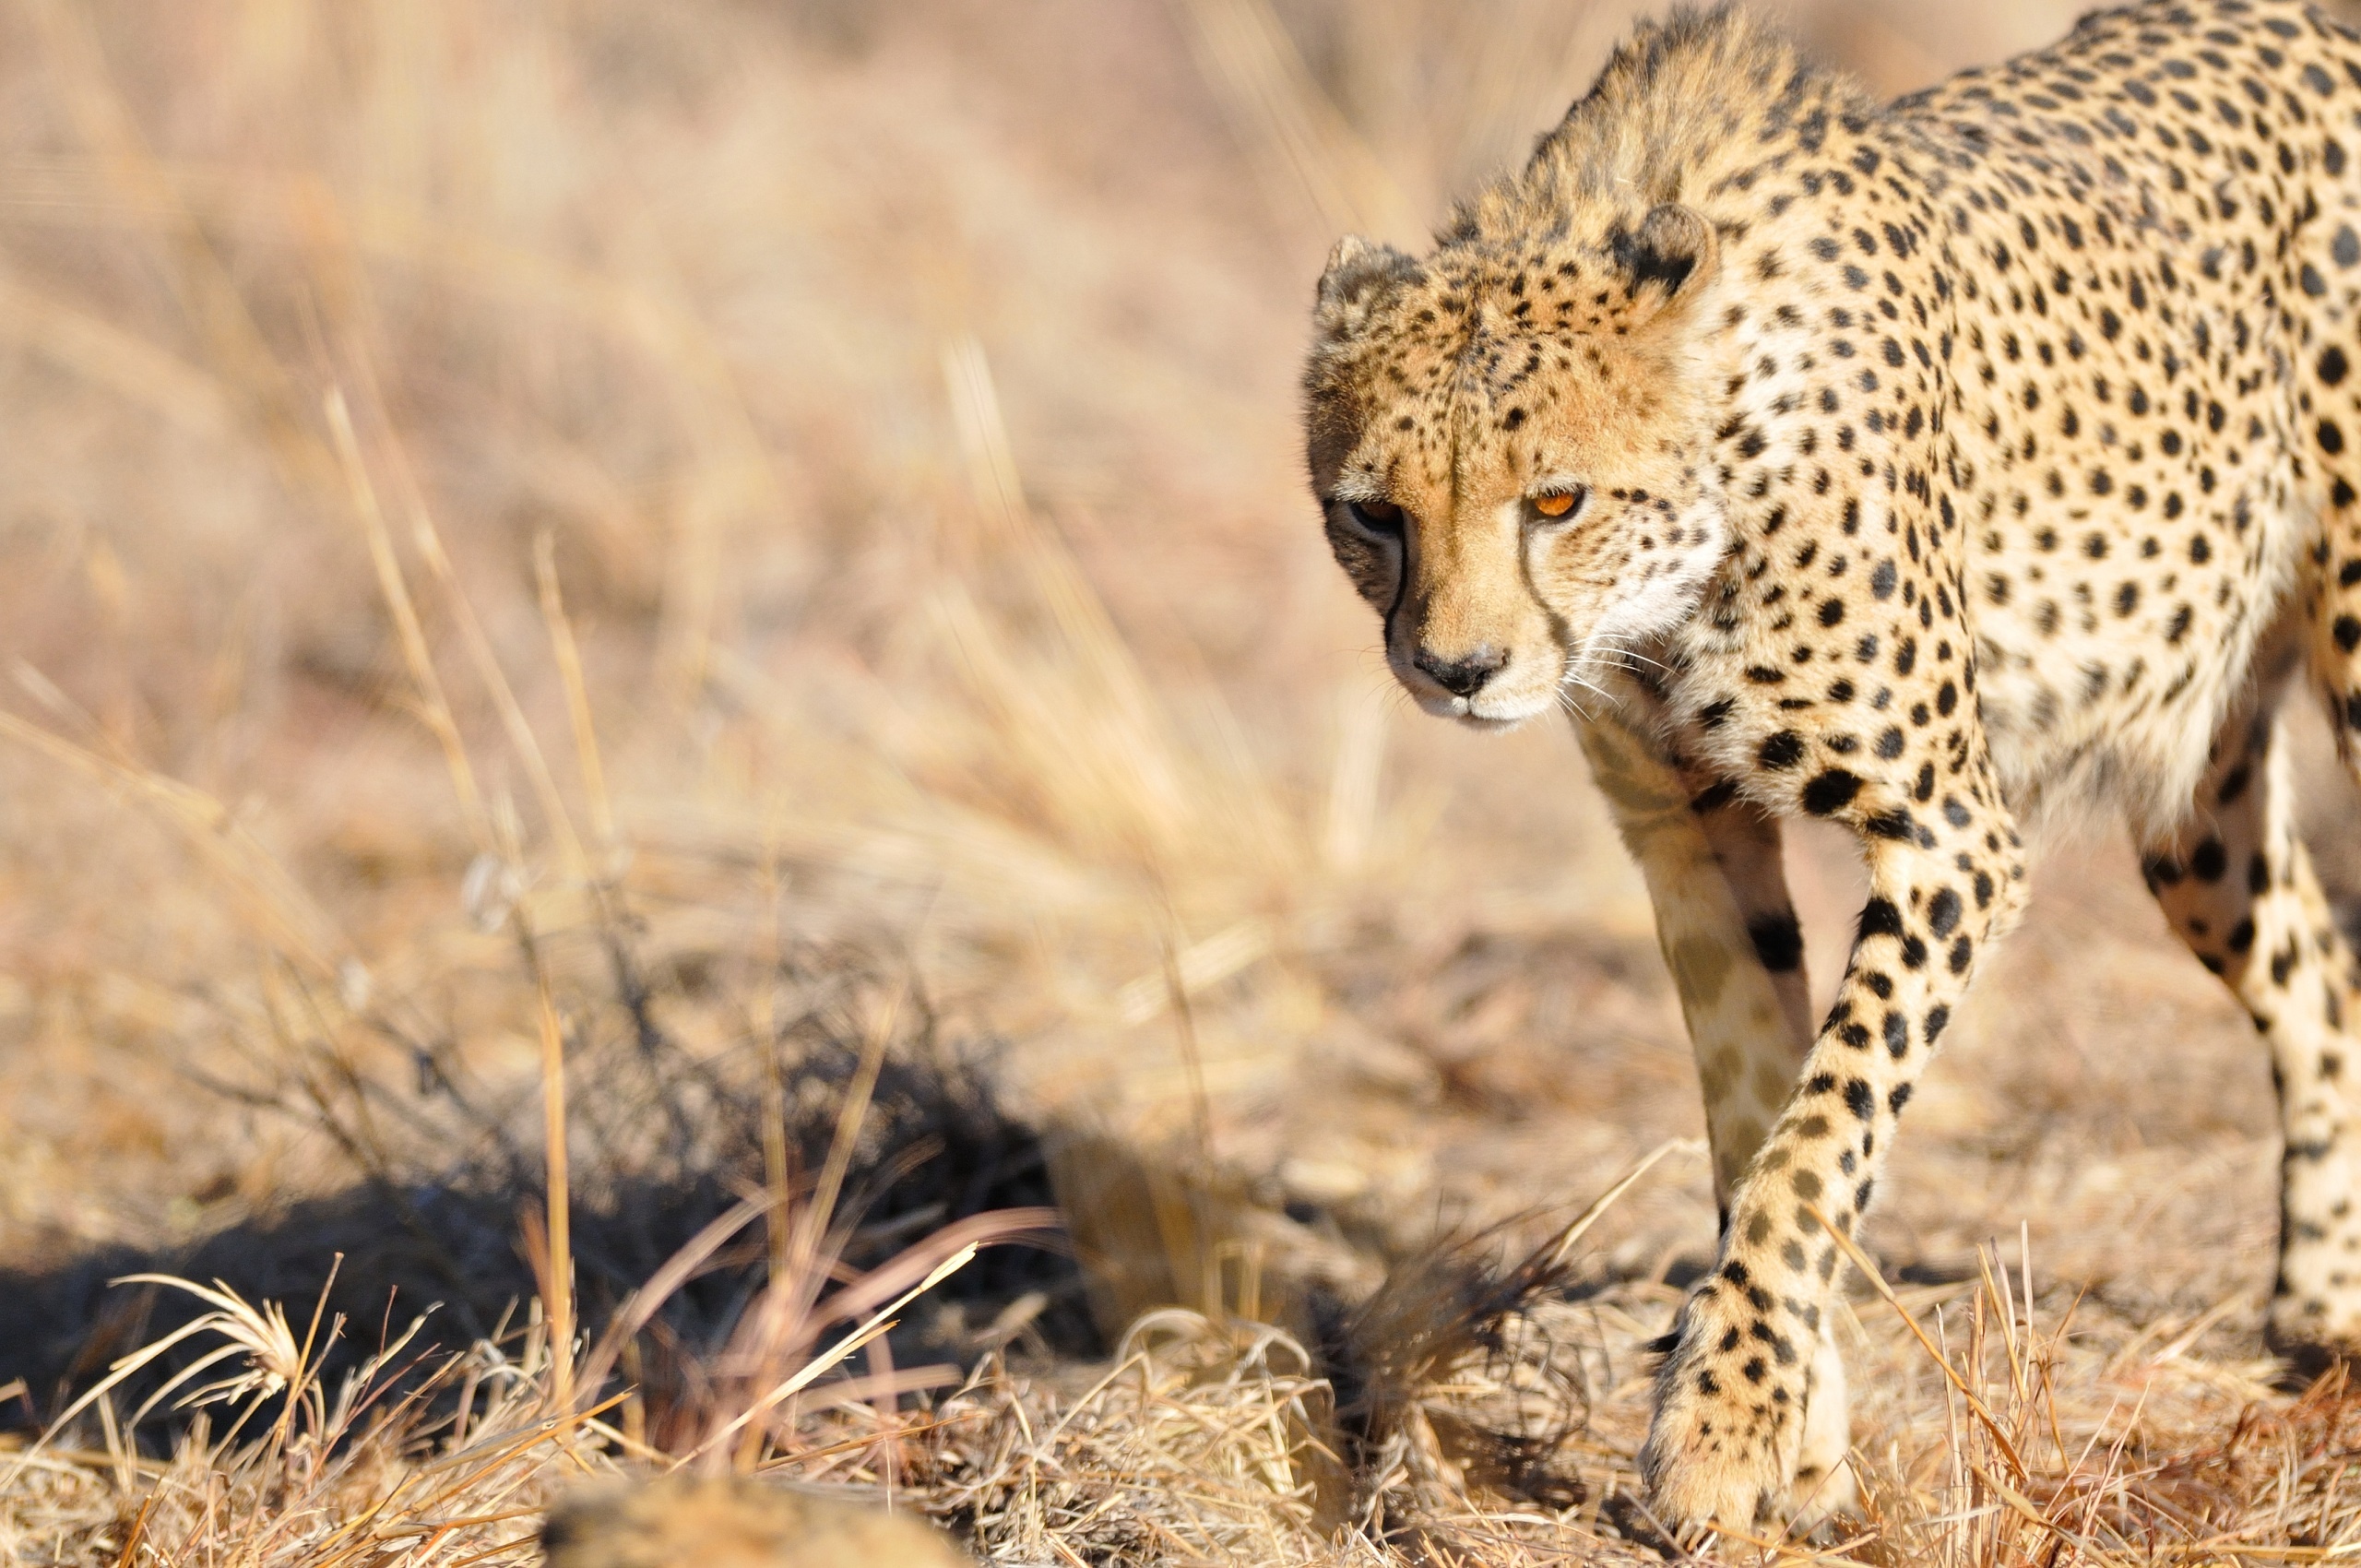 Wild cheetah photo